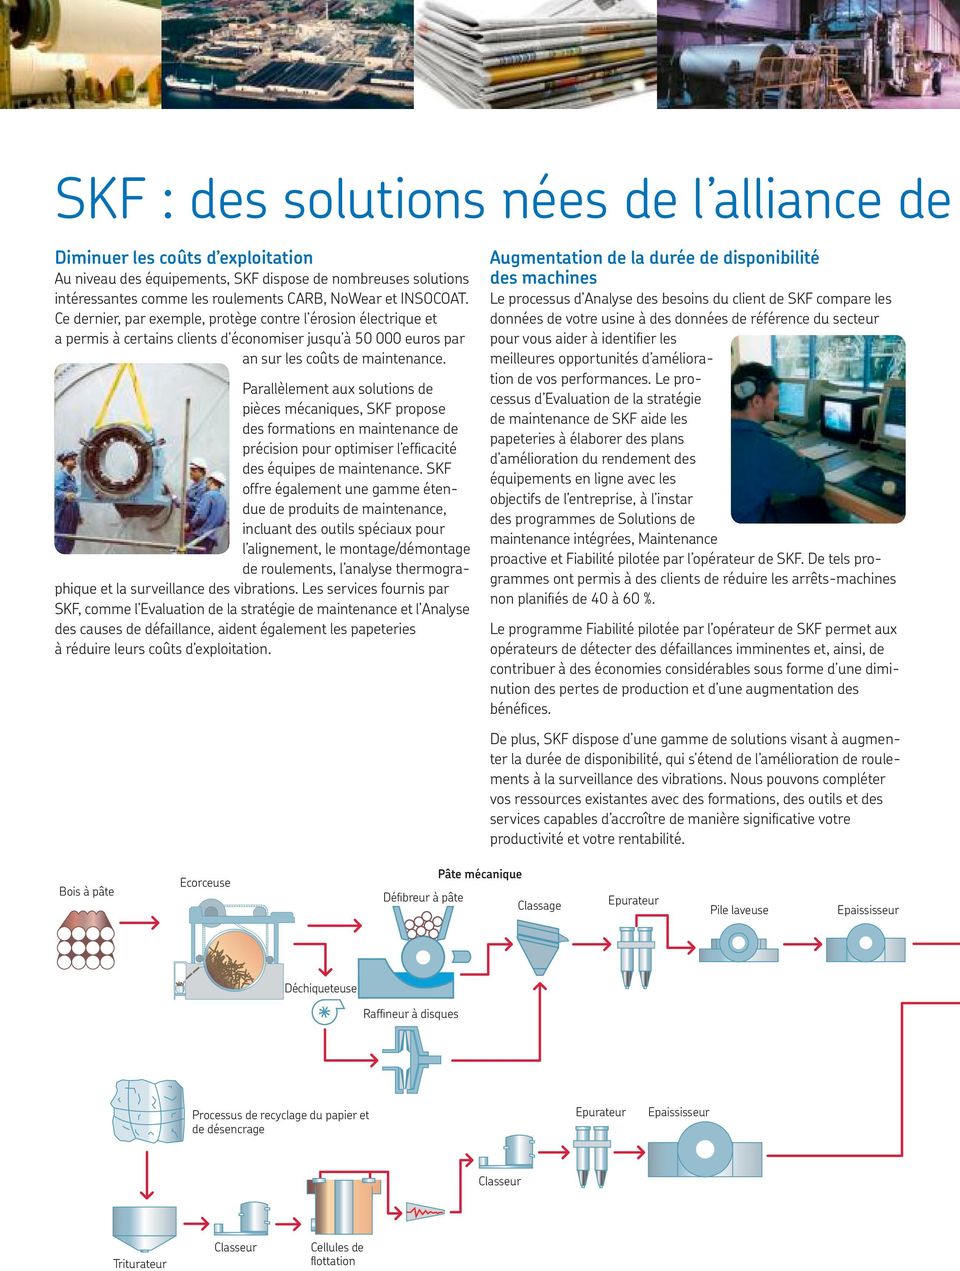 Parallèlement aux solutions de pièces mécaniques, SKF propose des formations en maintenance de précision pour optimiser l efficacité des équipes de maintenance.